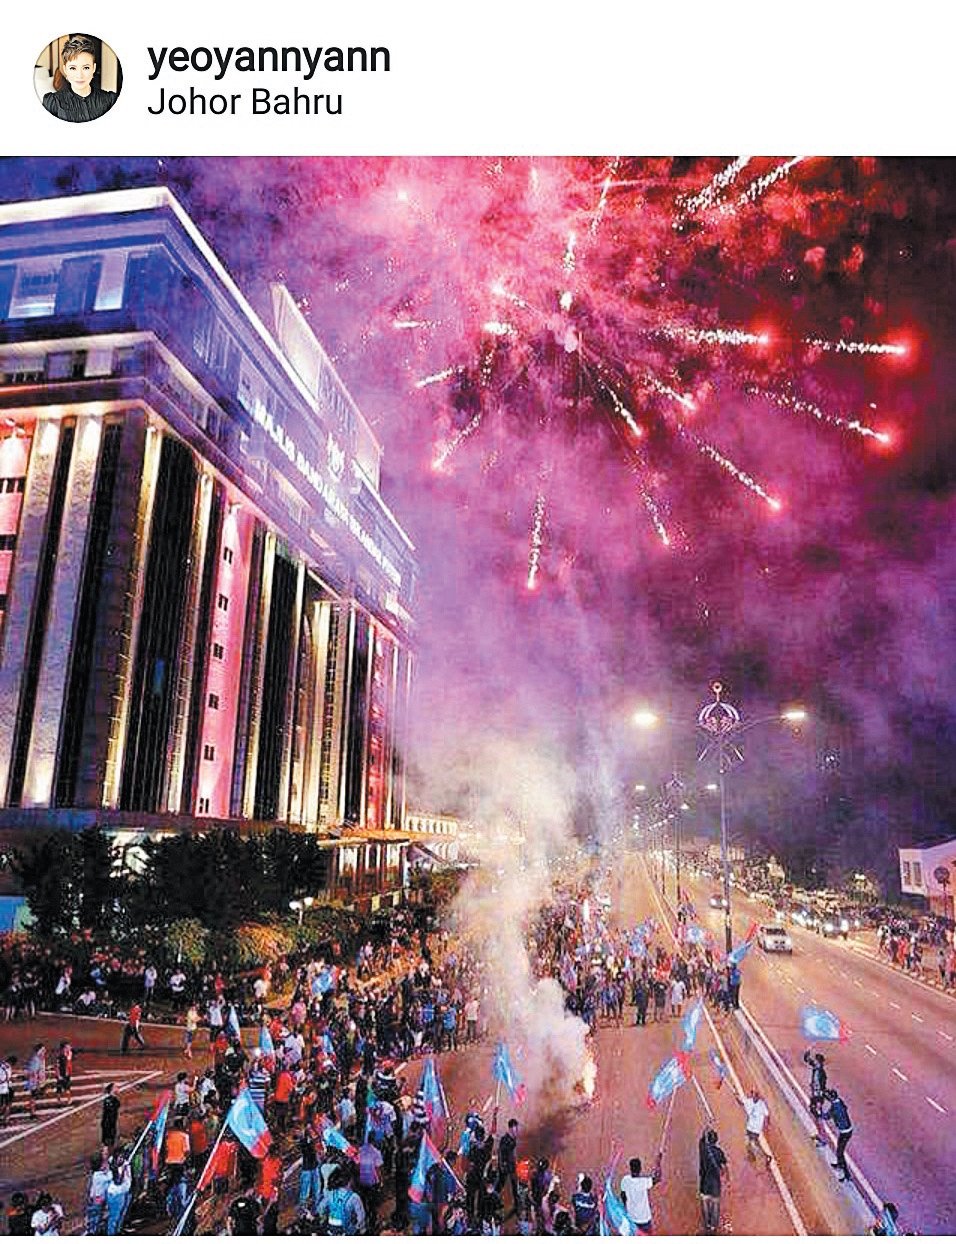 “视后”杨雁雁也上载了一张星空放烟火， 大马子民在街头欢腾的图片， 还呼吁大家： “好想大声唱《Negaraku》，要一起吗？”